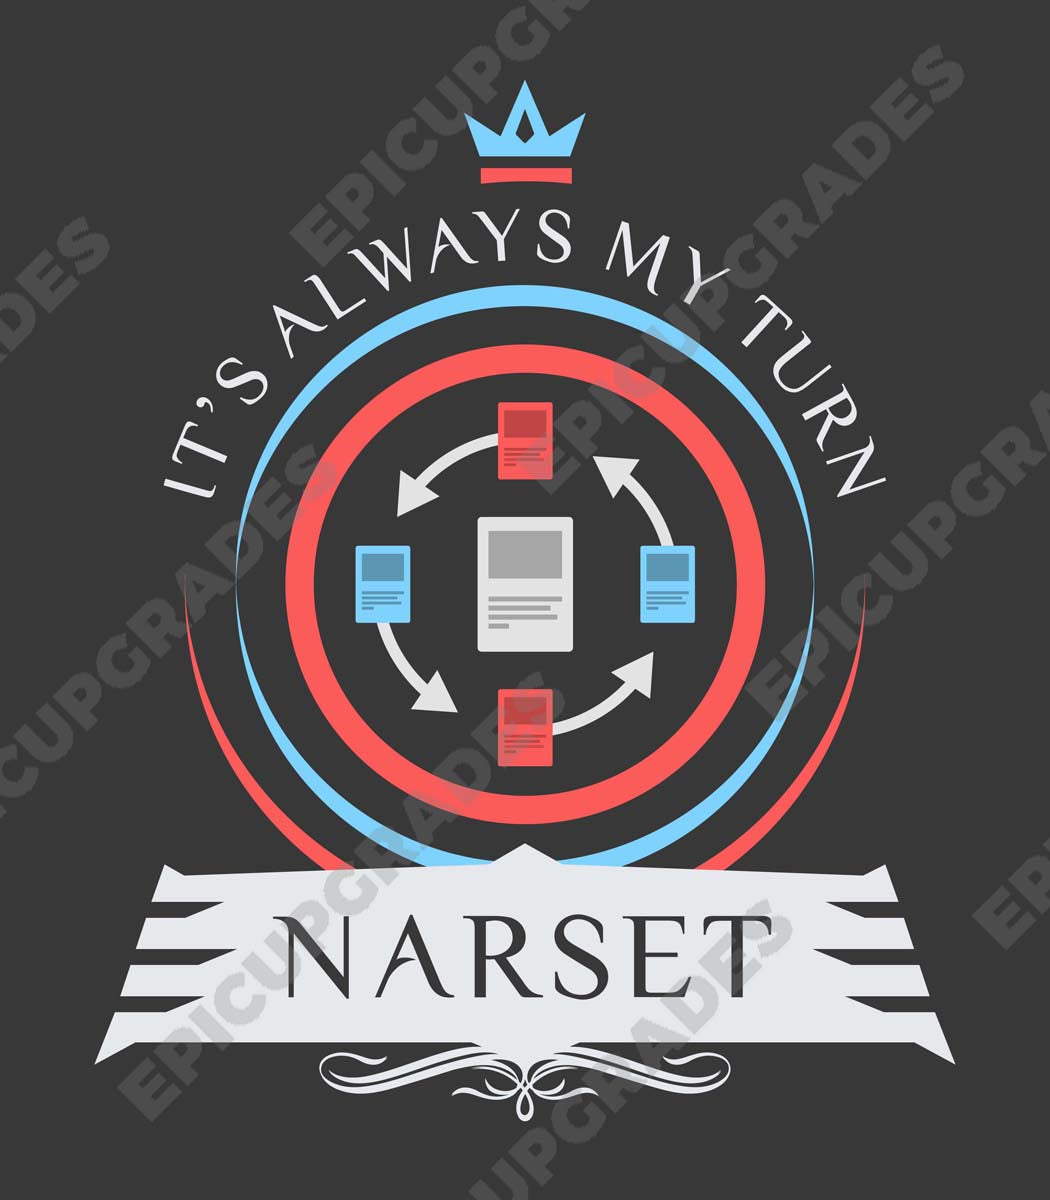 Commander Narset - Magic the Gathering Unisex T-Shirt - epicupgrades